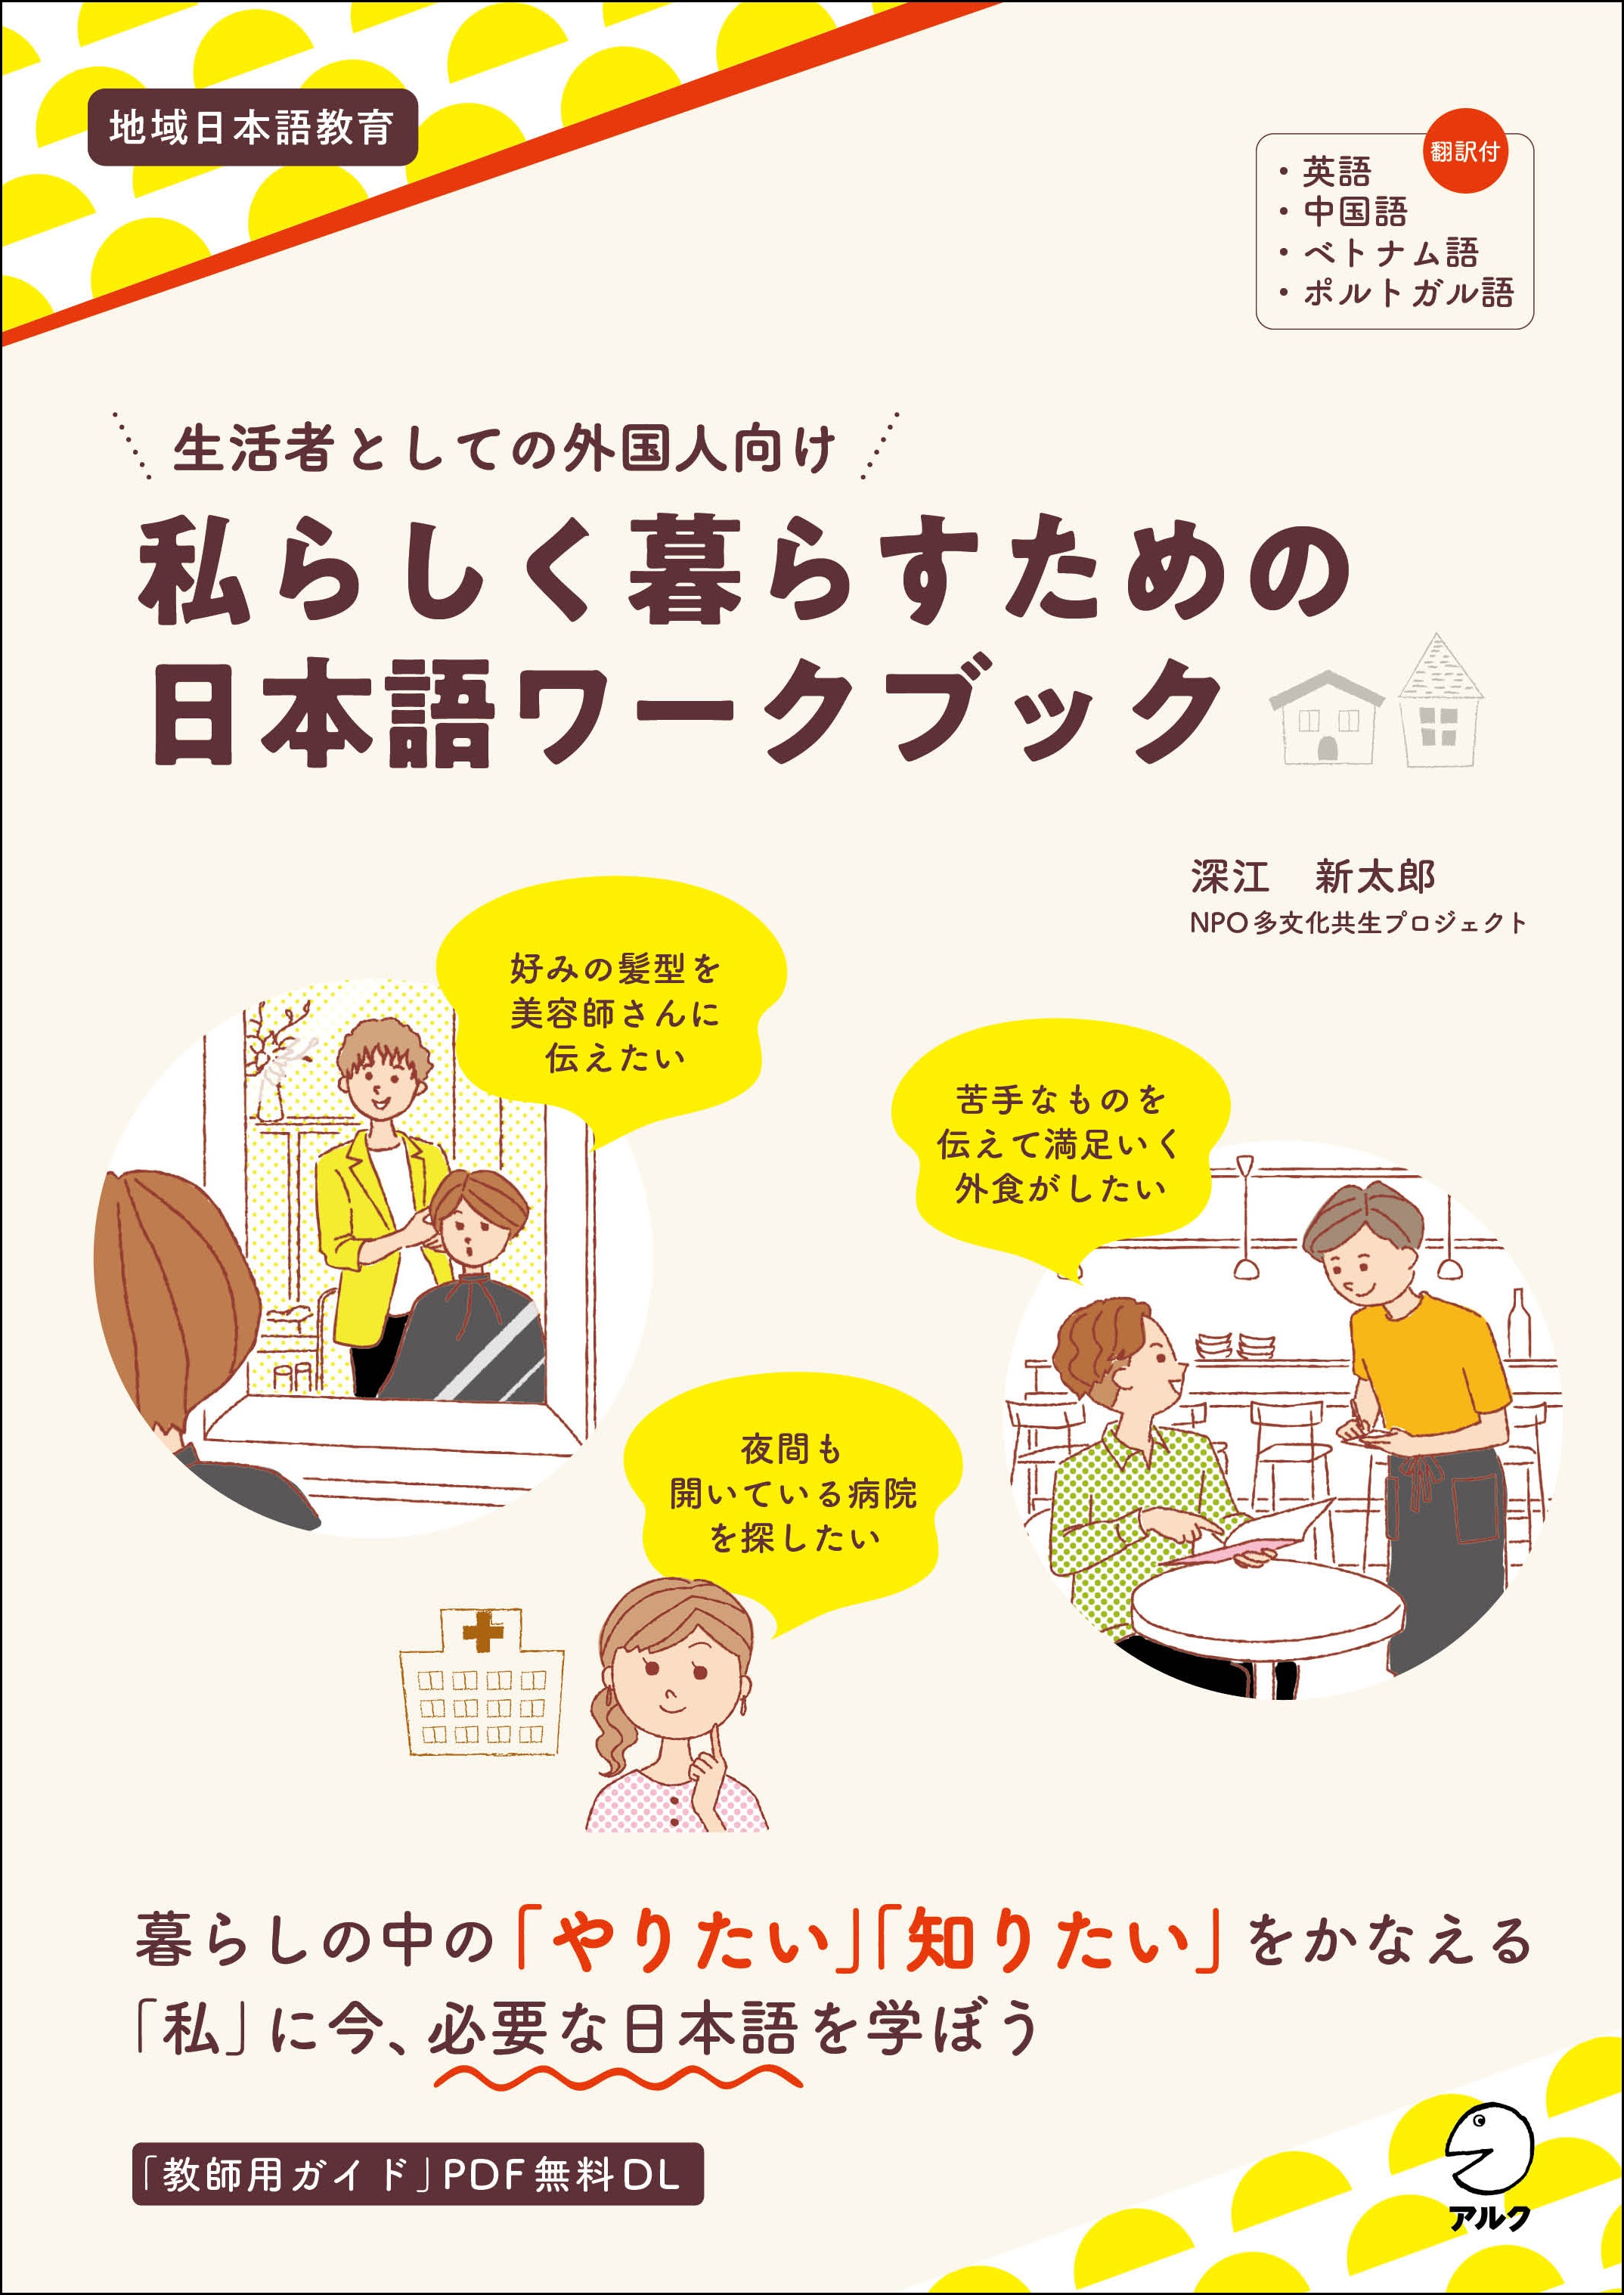 地域在住の外国人にとって必要な日本語をオーダーメイドで学べる 生活者としての外国人向け 私らしく暮らすための日本語ワークブック 3月29日発売 株式会社アルクのプレスリリース